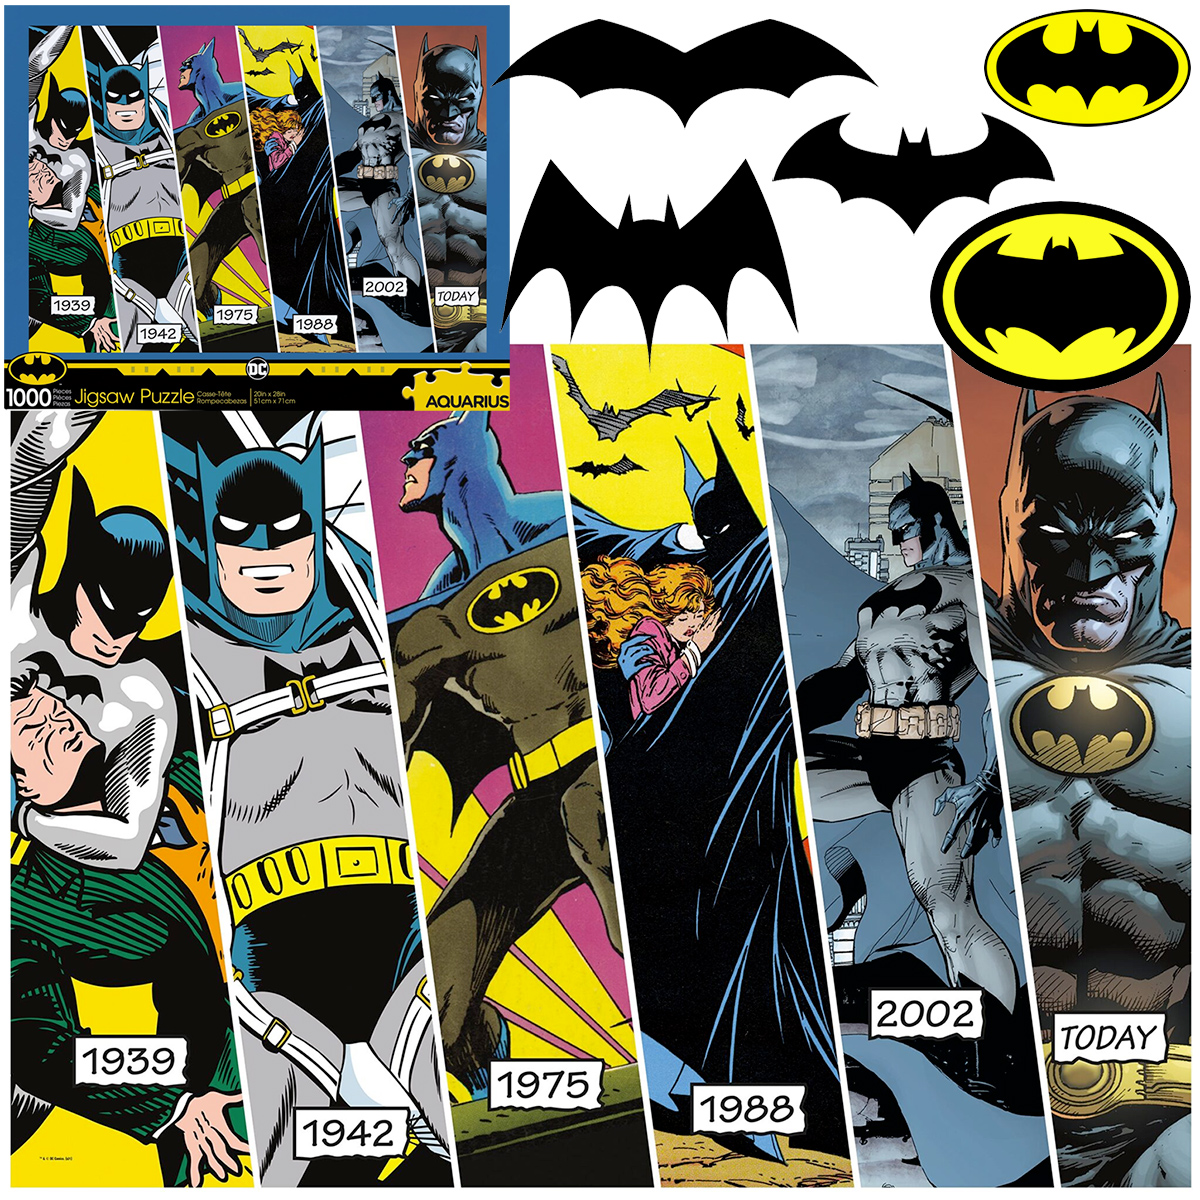 Quebra-Cabeça Batman Timeline com Linha do Tempo desde 1939